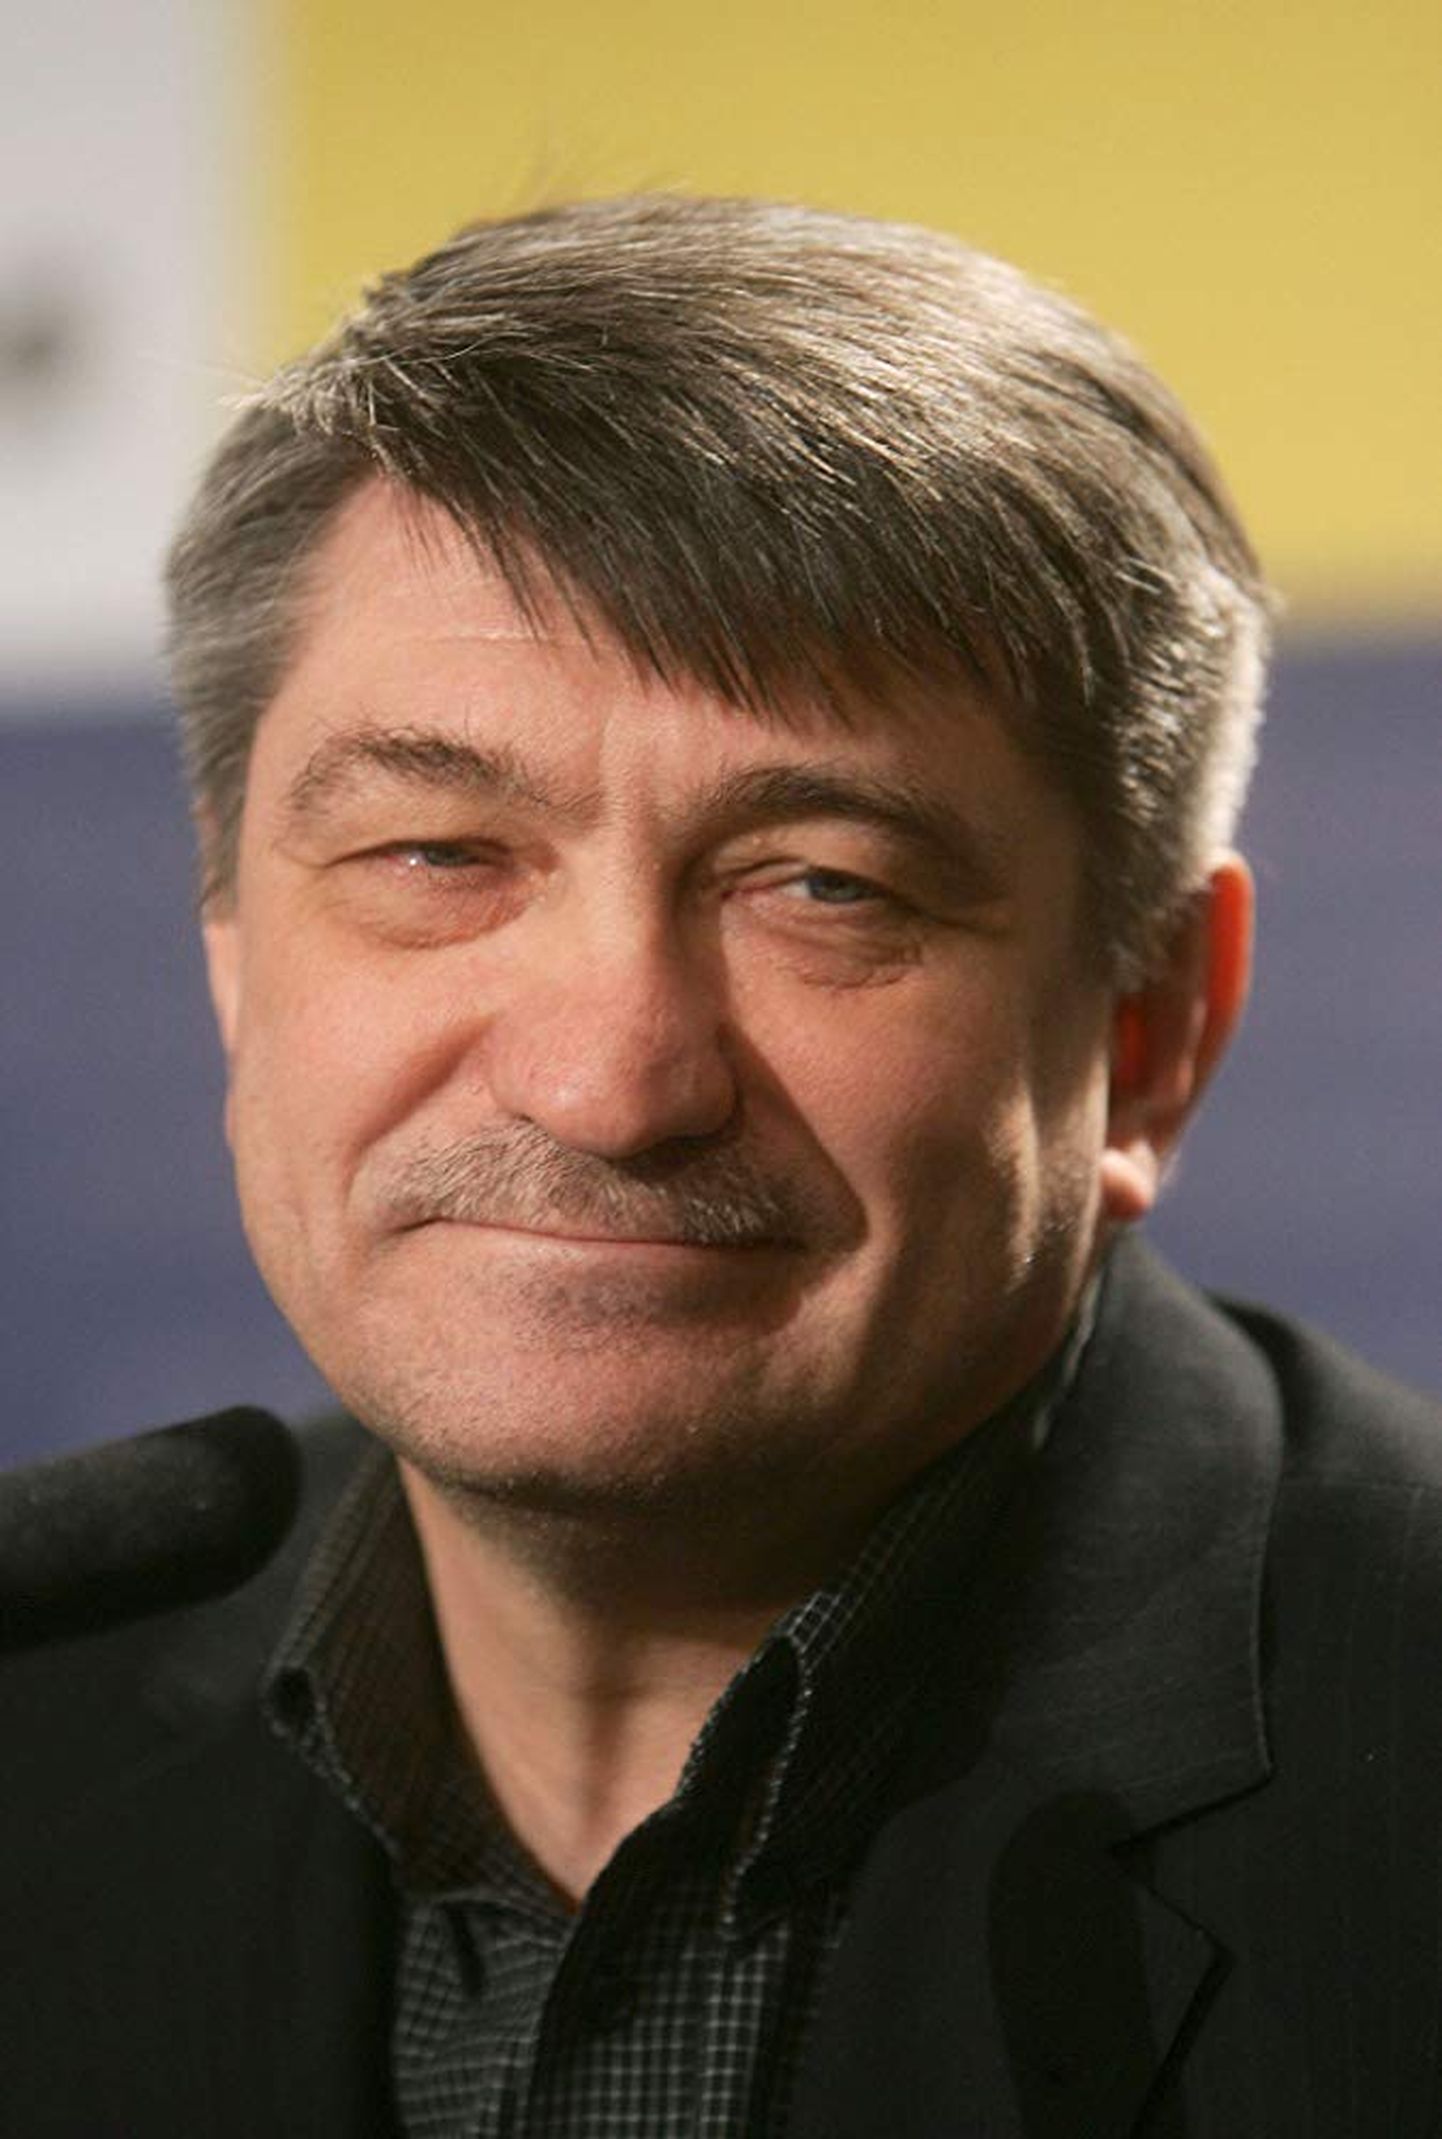 Vene kuulsamaid elavaid režissööre Aleksandr Sokurov on 17 mängu- ja 35 dokumentaalfilmi autor, kelle mängufilm "Faust" võitis 68. Veneetsia filmifestivali peaauhinna Kuldlõvi.